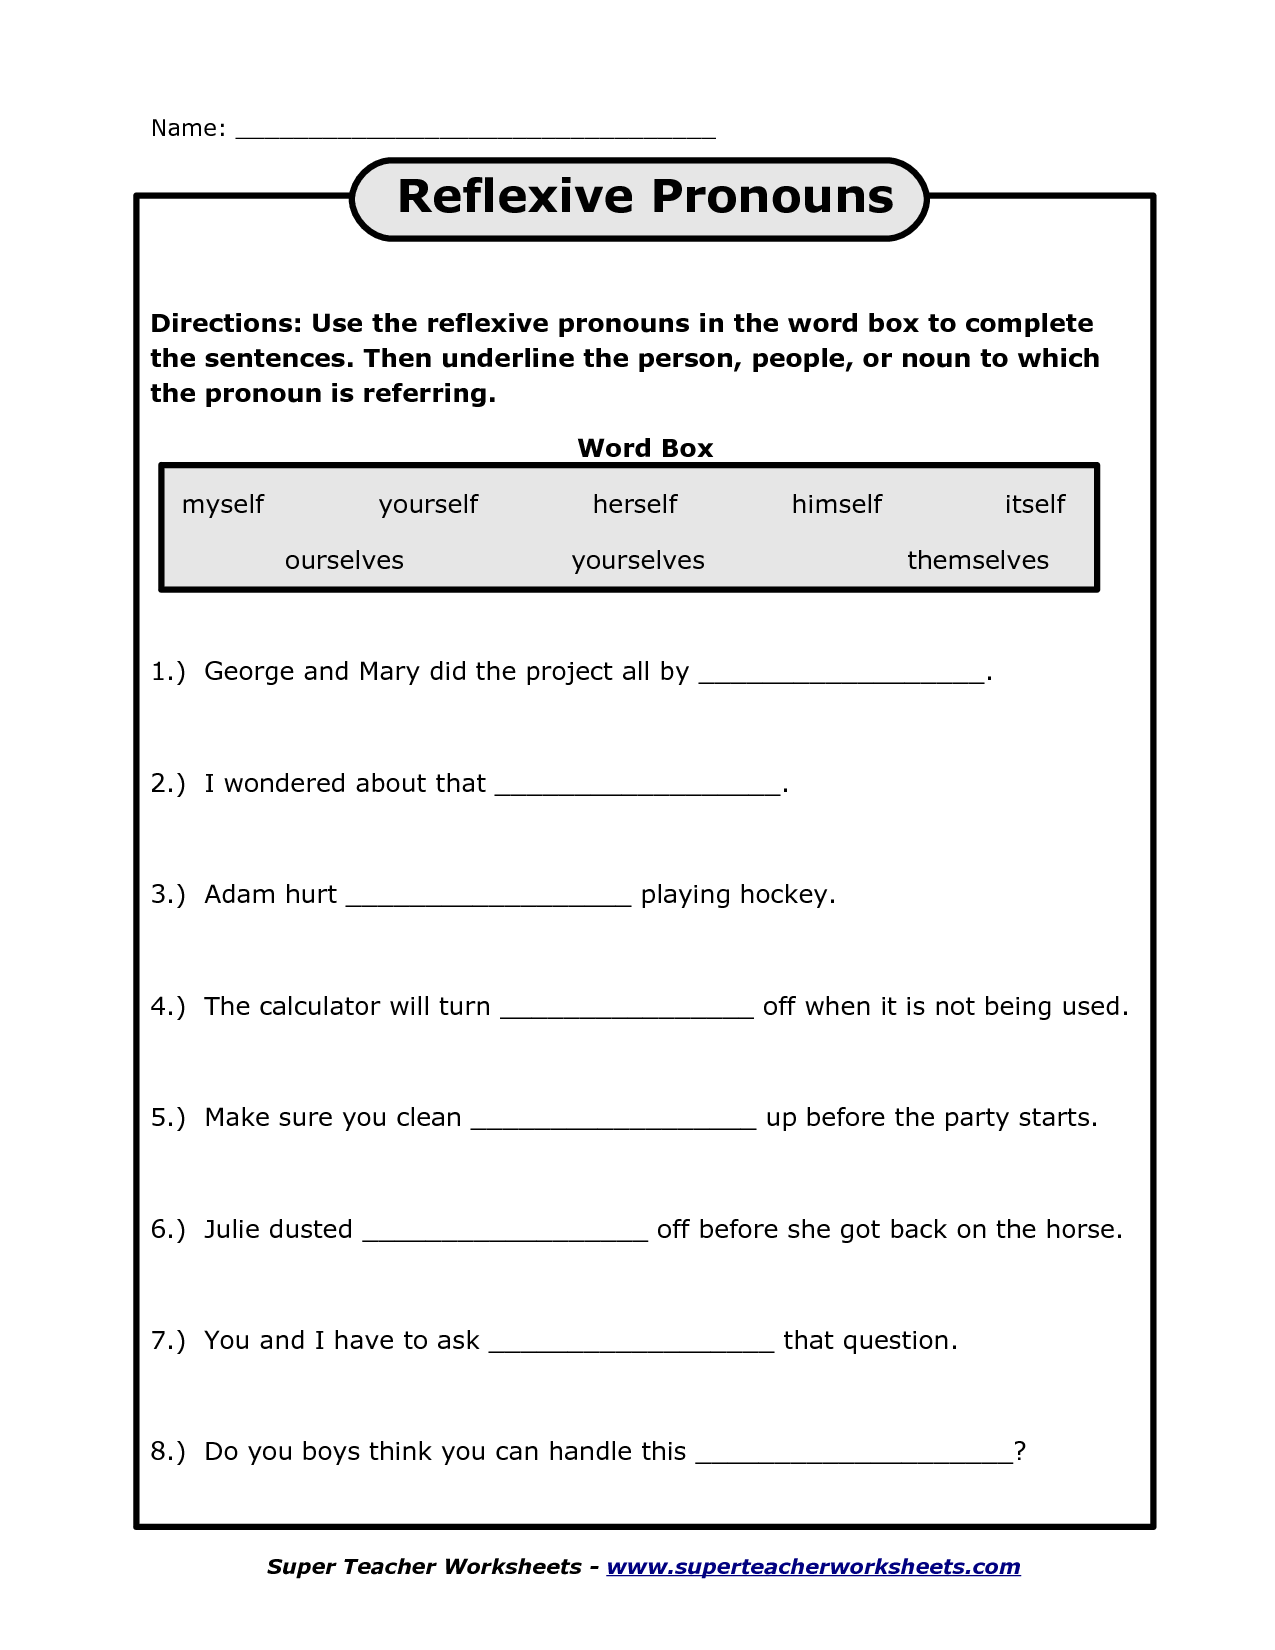 reflexive-pronouns-esl-worksheet-by-myemma